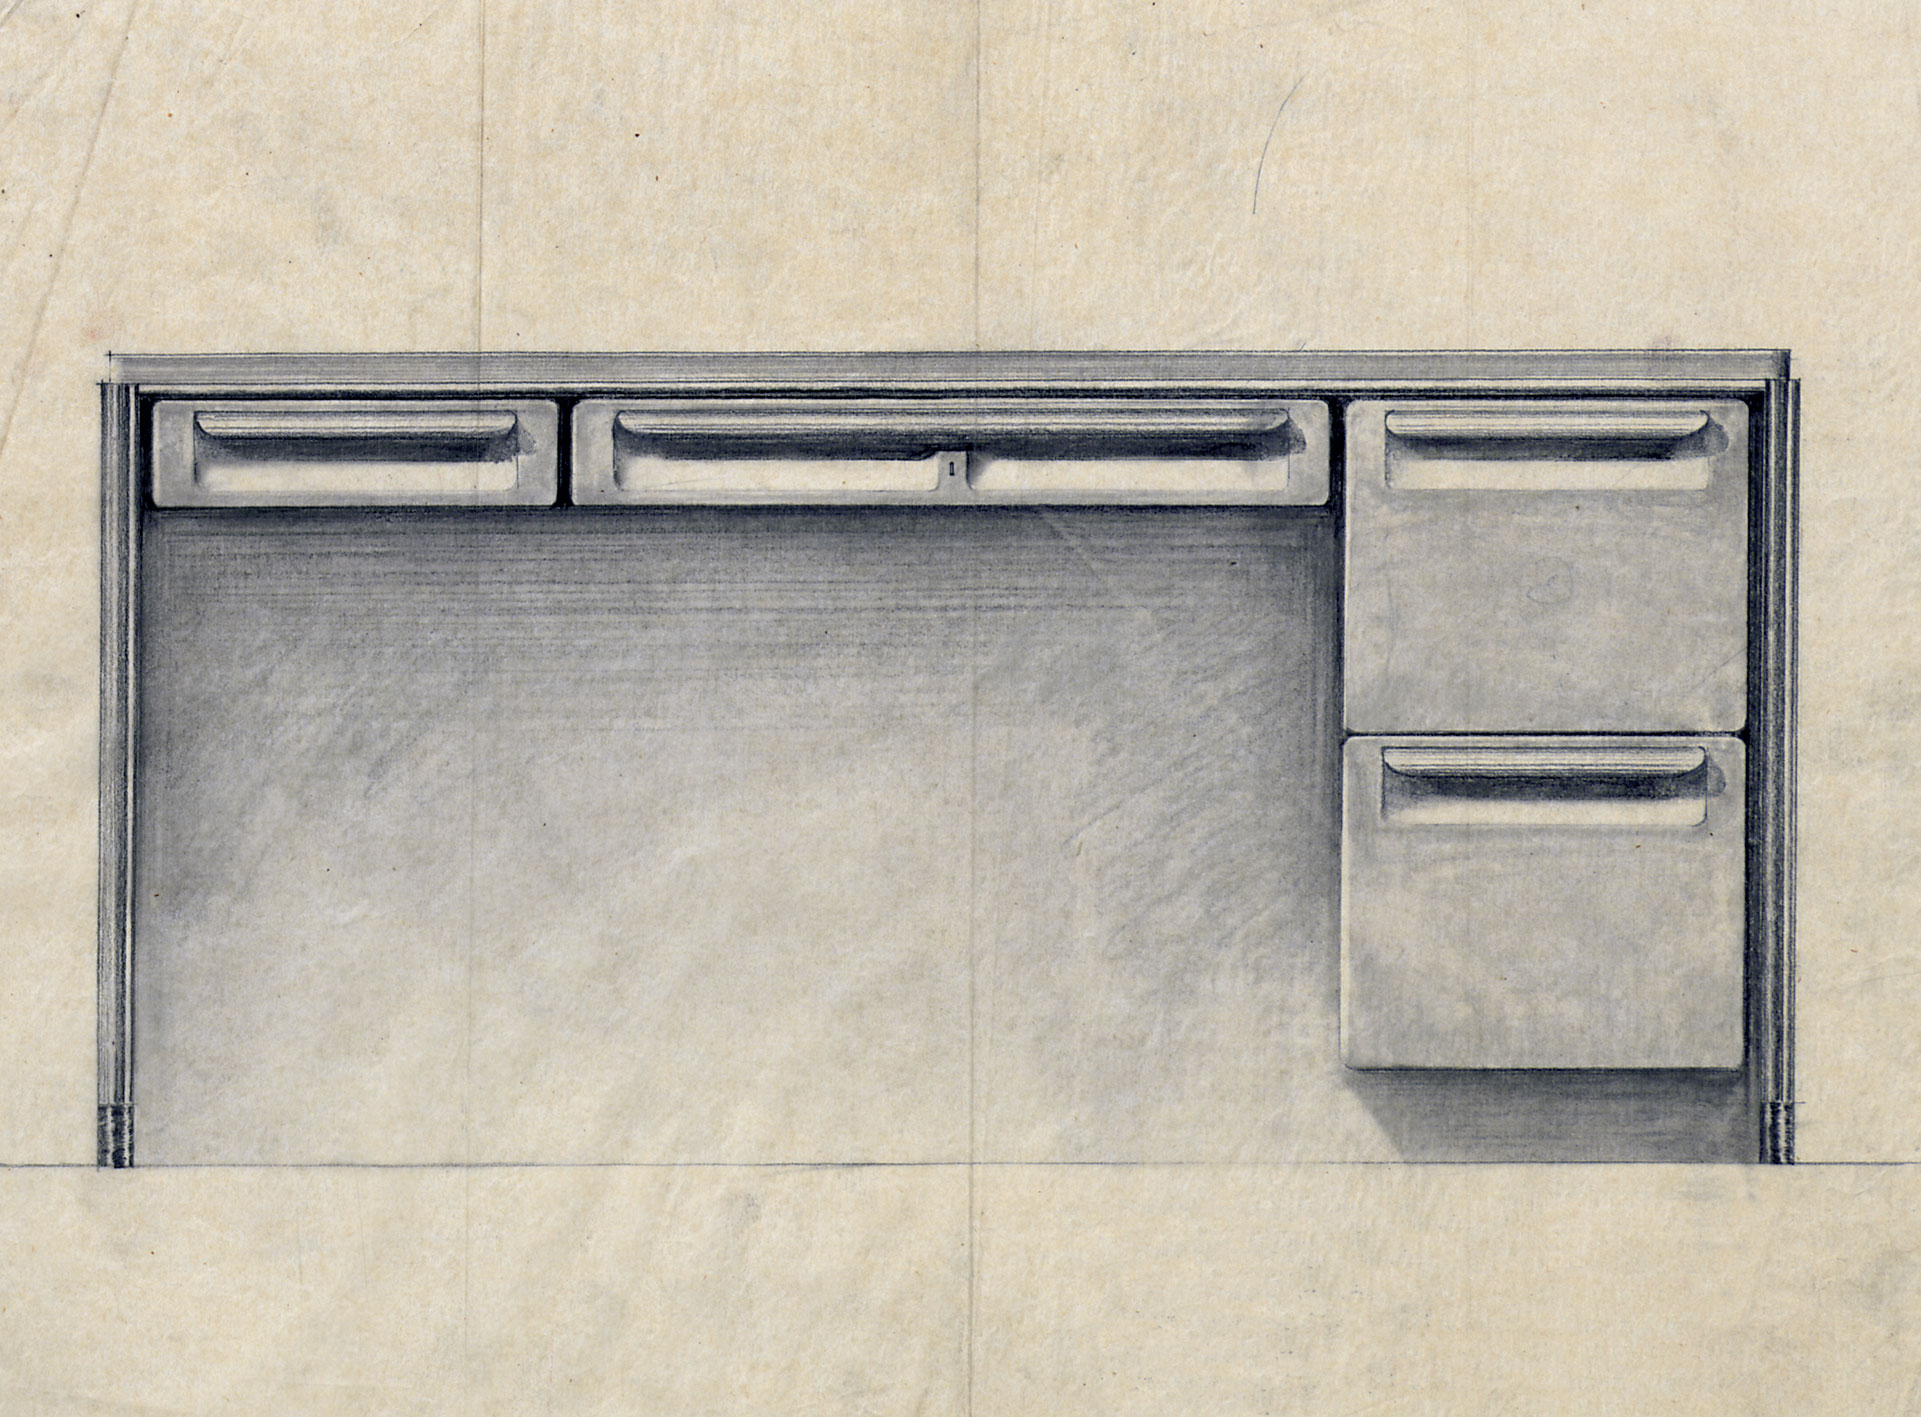 « Bureau métallique ». Modèle type CPDE. Détail du plan Ateliers Jean Prouvé n° 8056, 1939.